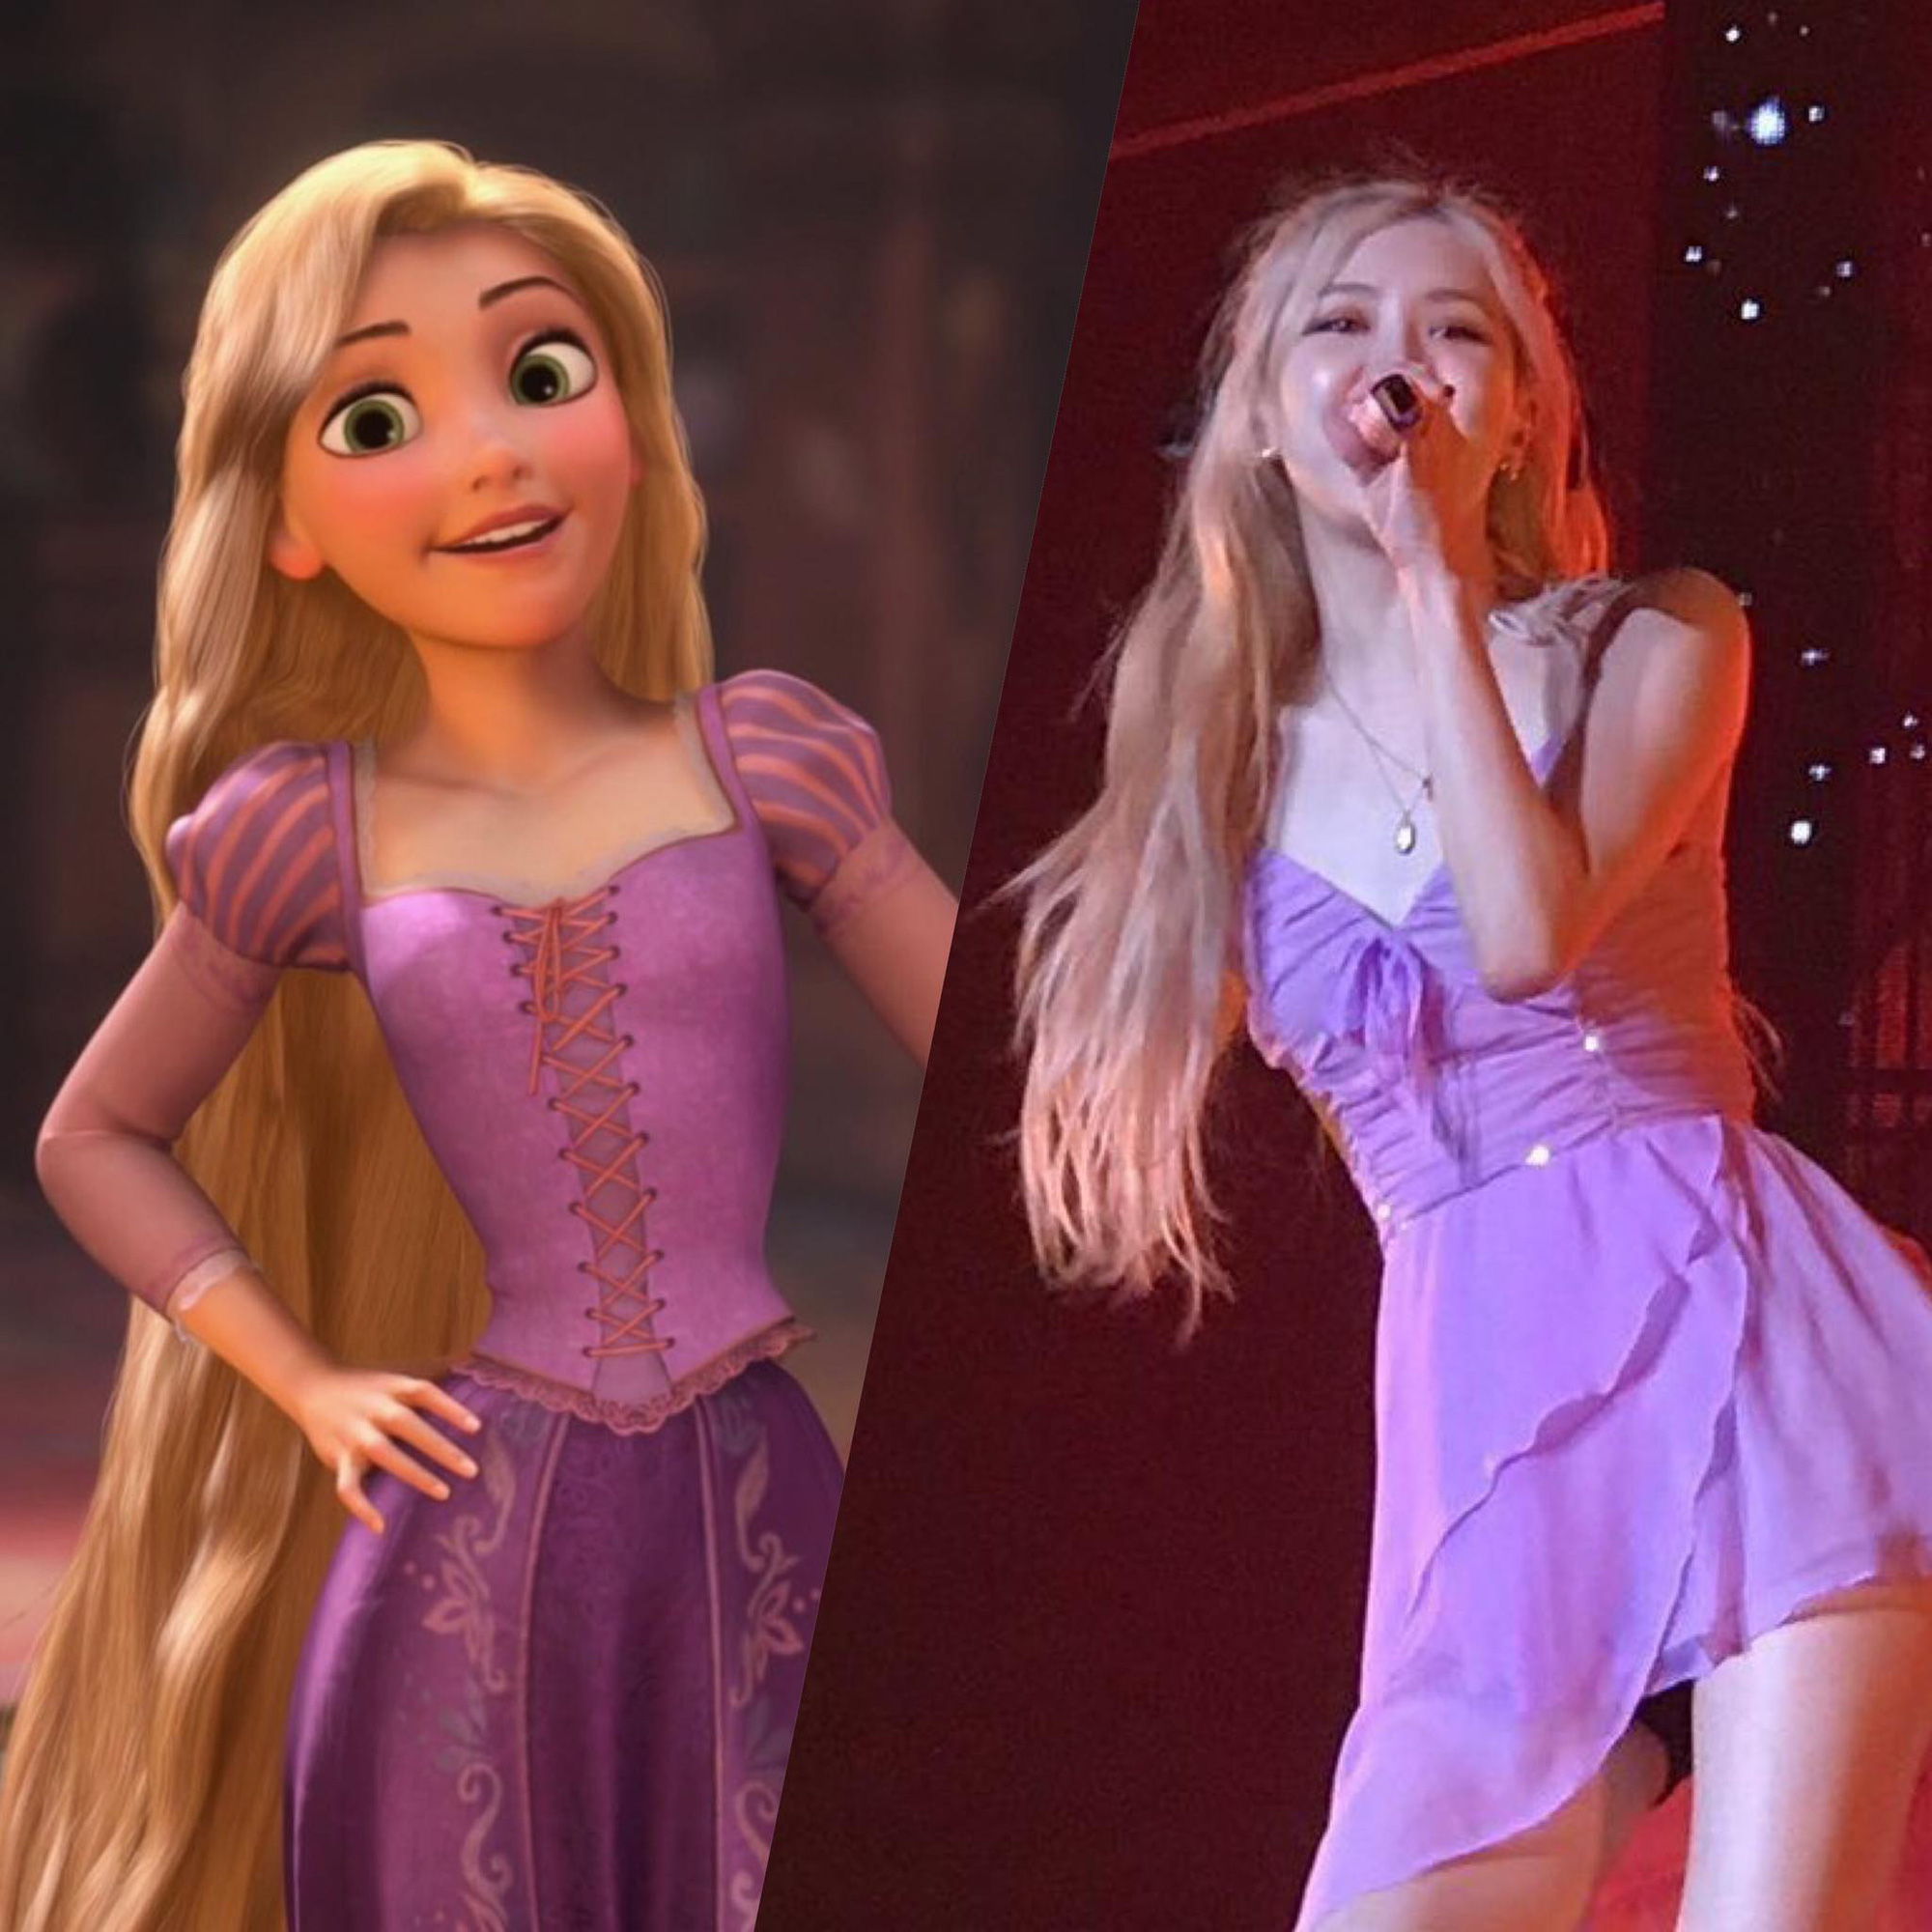 Tóc vàng xinh đẹp như tiên tử, chẳng trách Rosé cân hết cả dàn công chúa Disney khiến ai ngắm cũng mê - Ảnh 2.